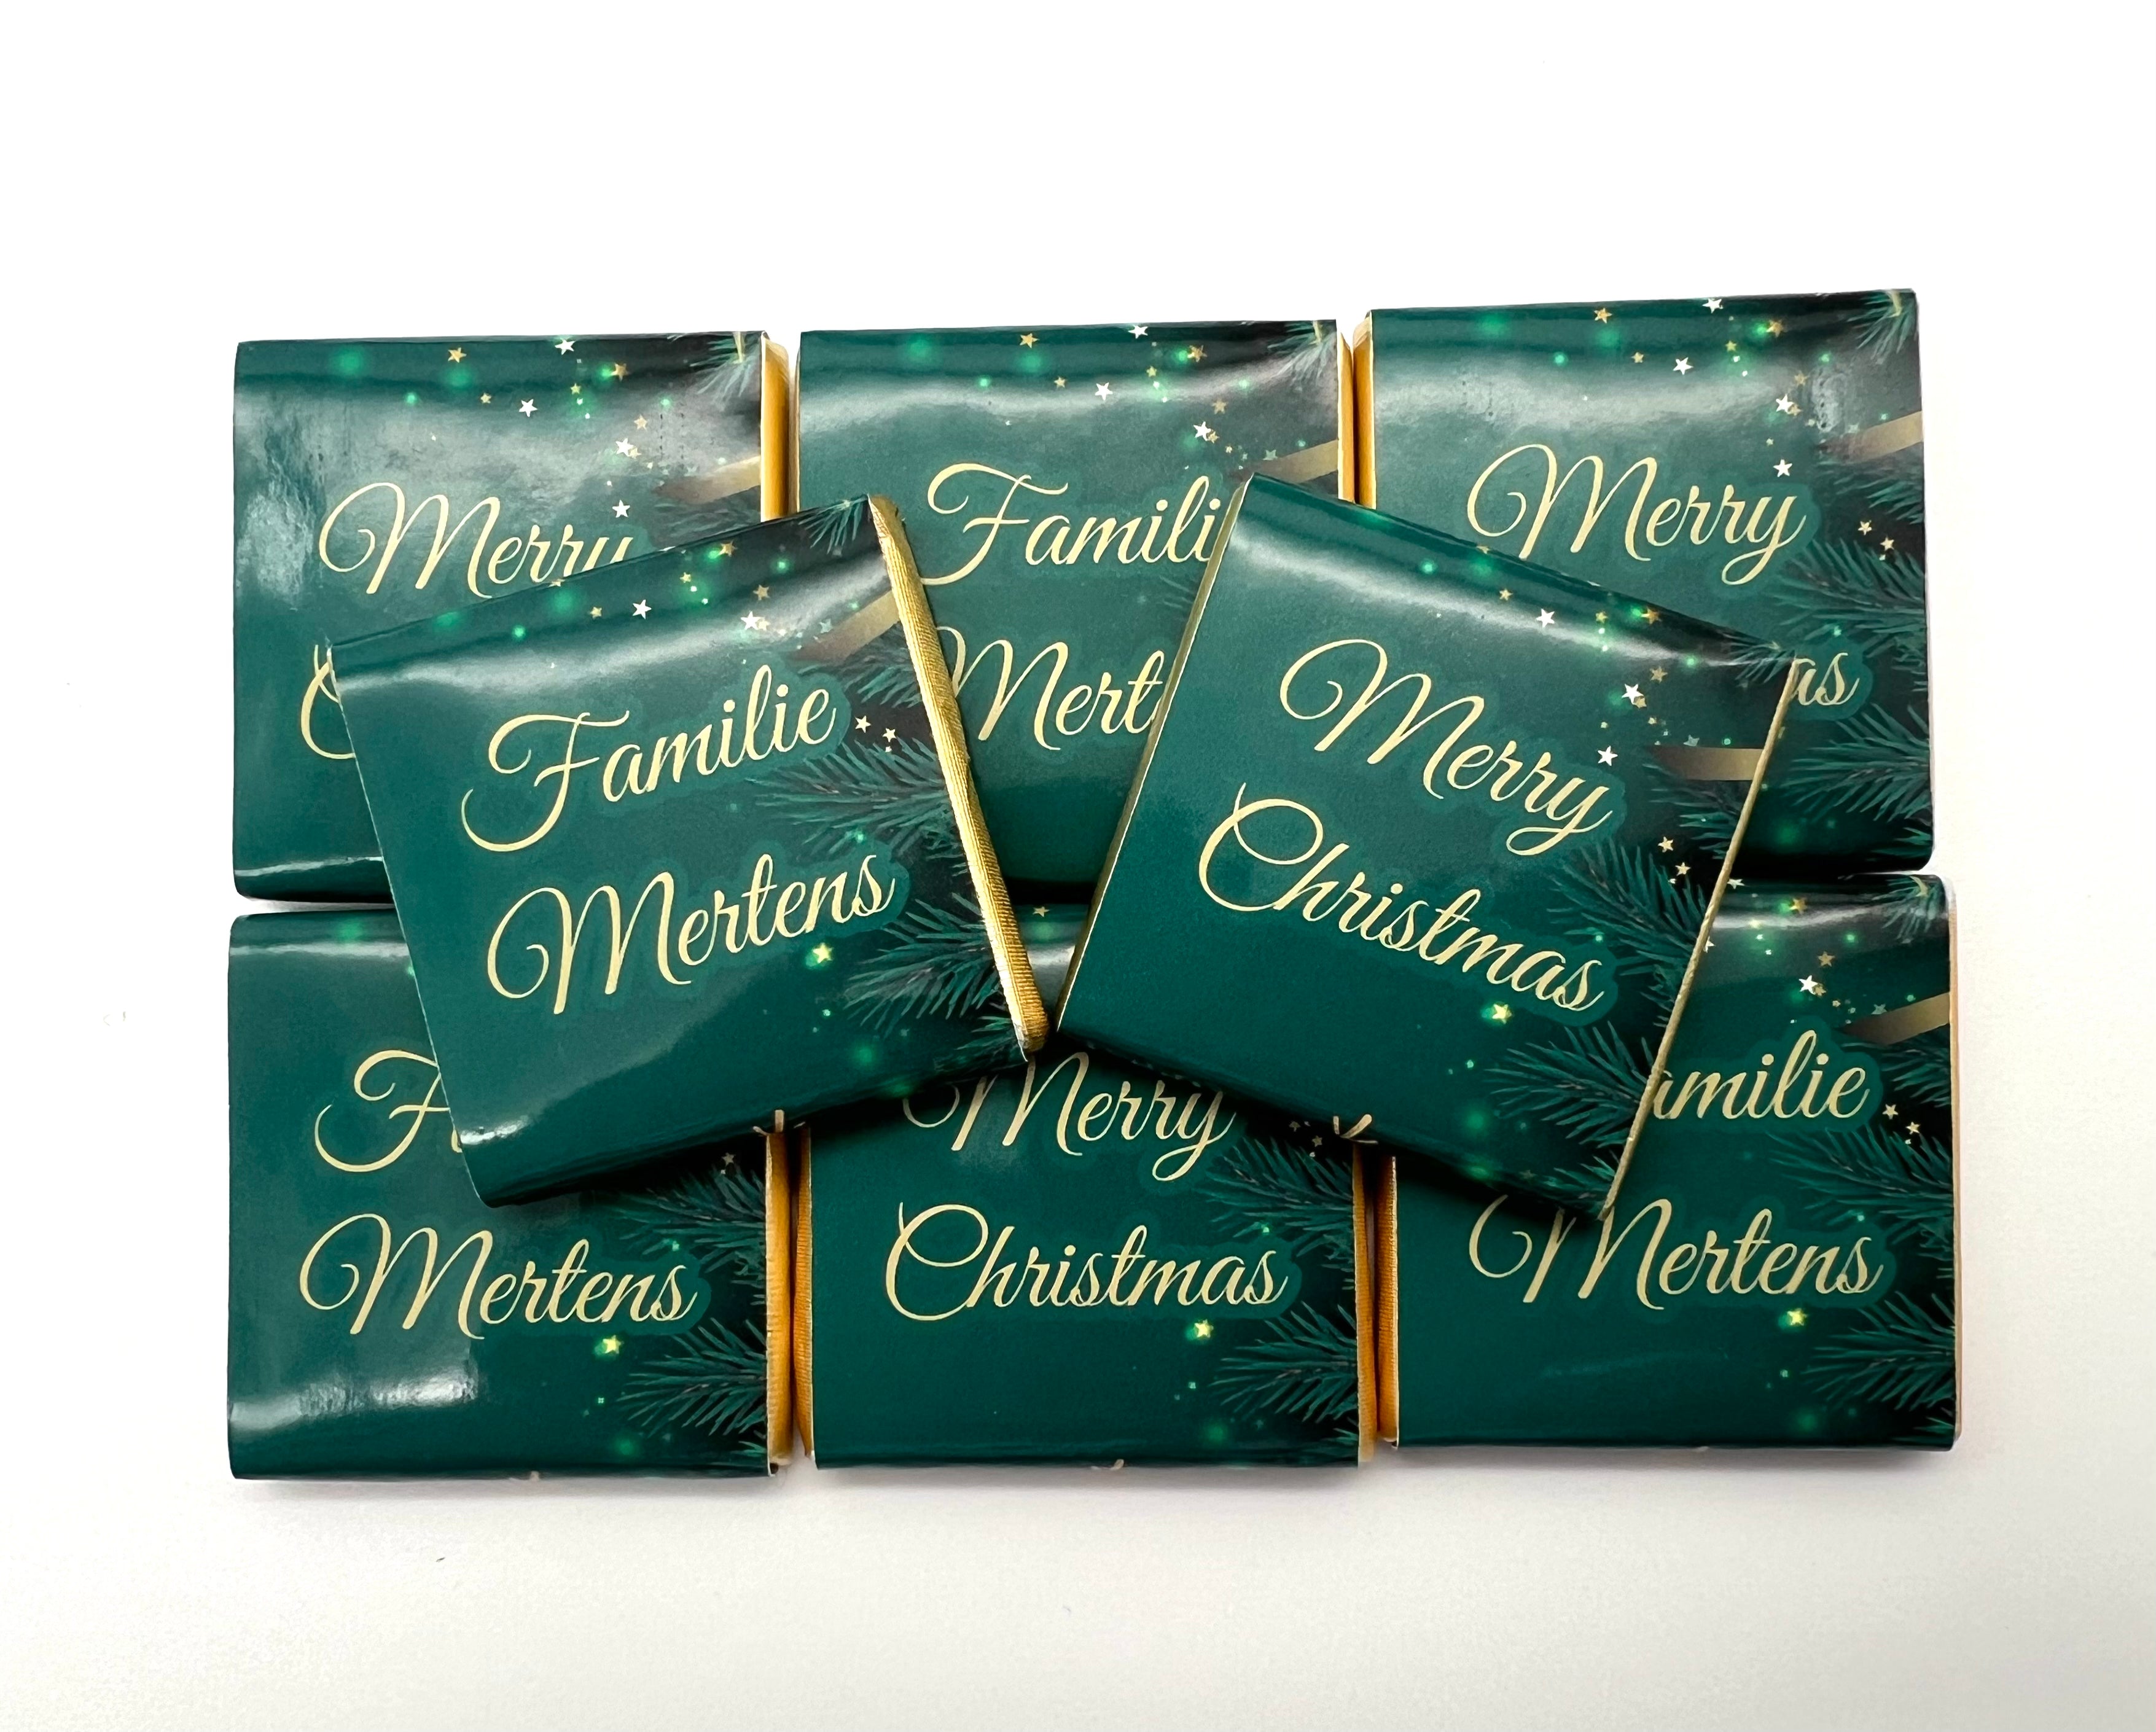 Weinachten Merry Christmas Für die Ganze Familie Schokobox Schokolade personalisiert  Gastgeschenk Mitgebsel  Candybar